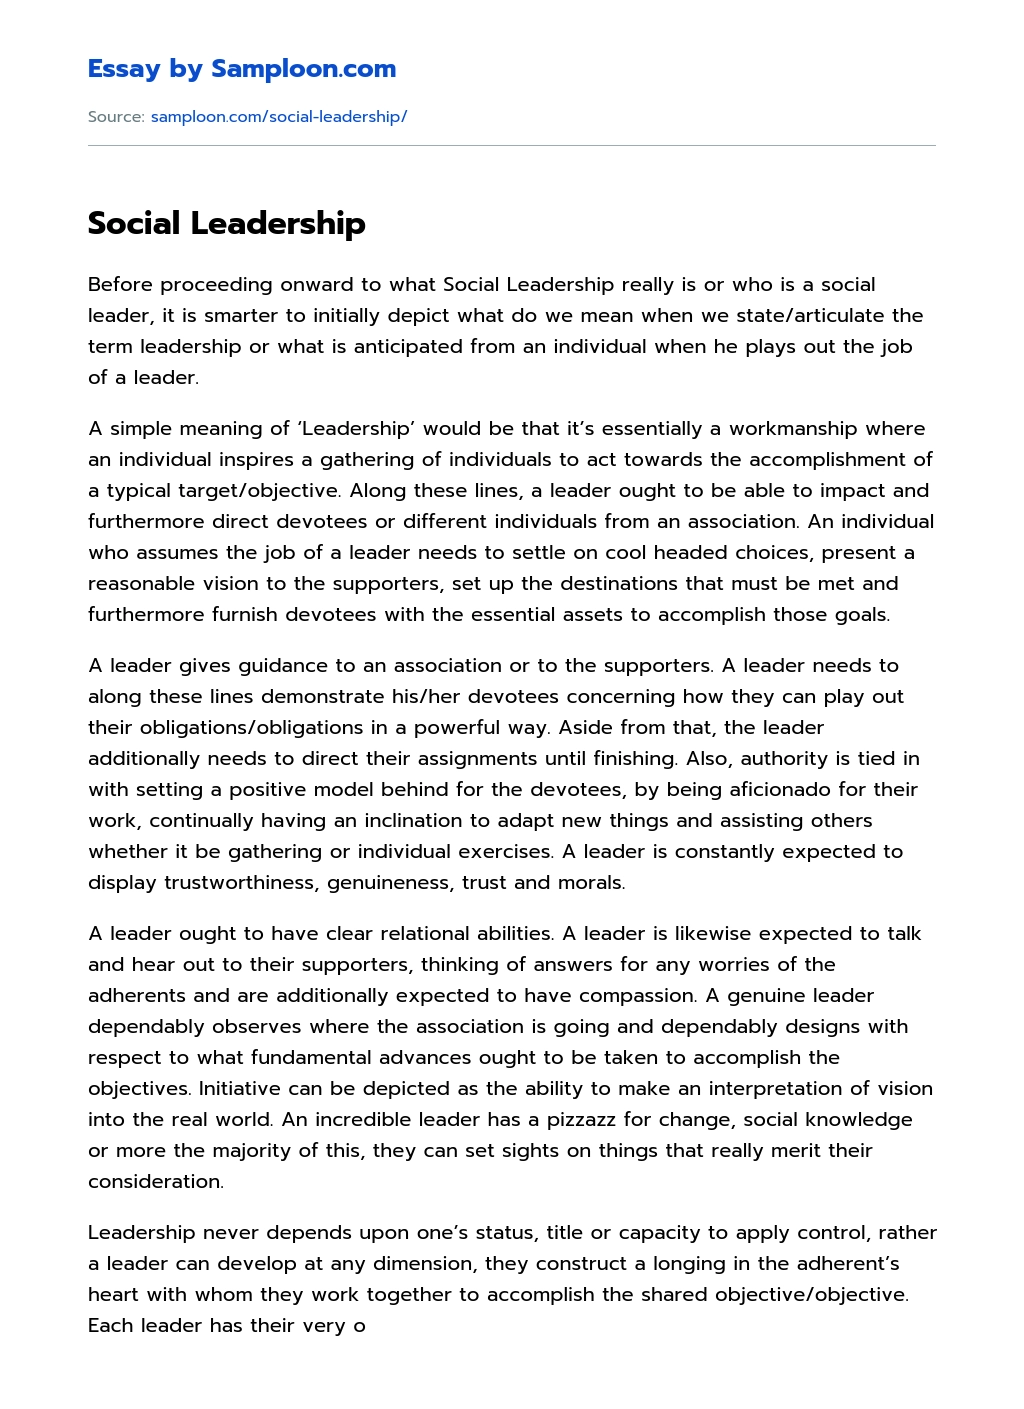 Social Leadership essay